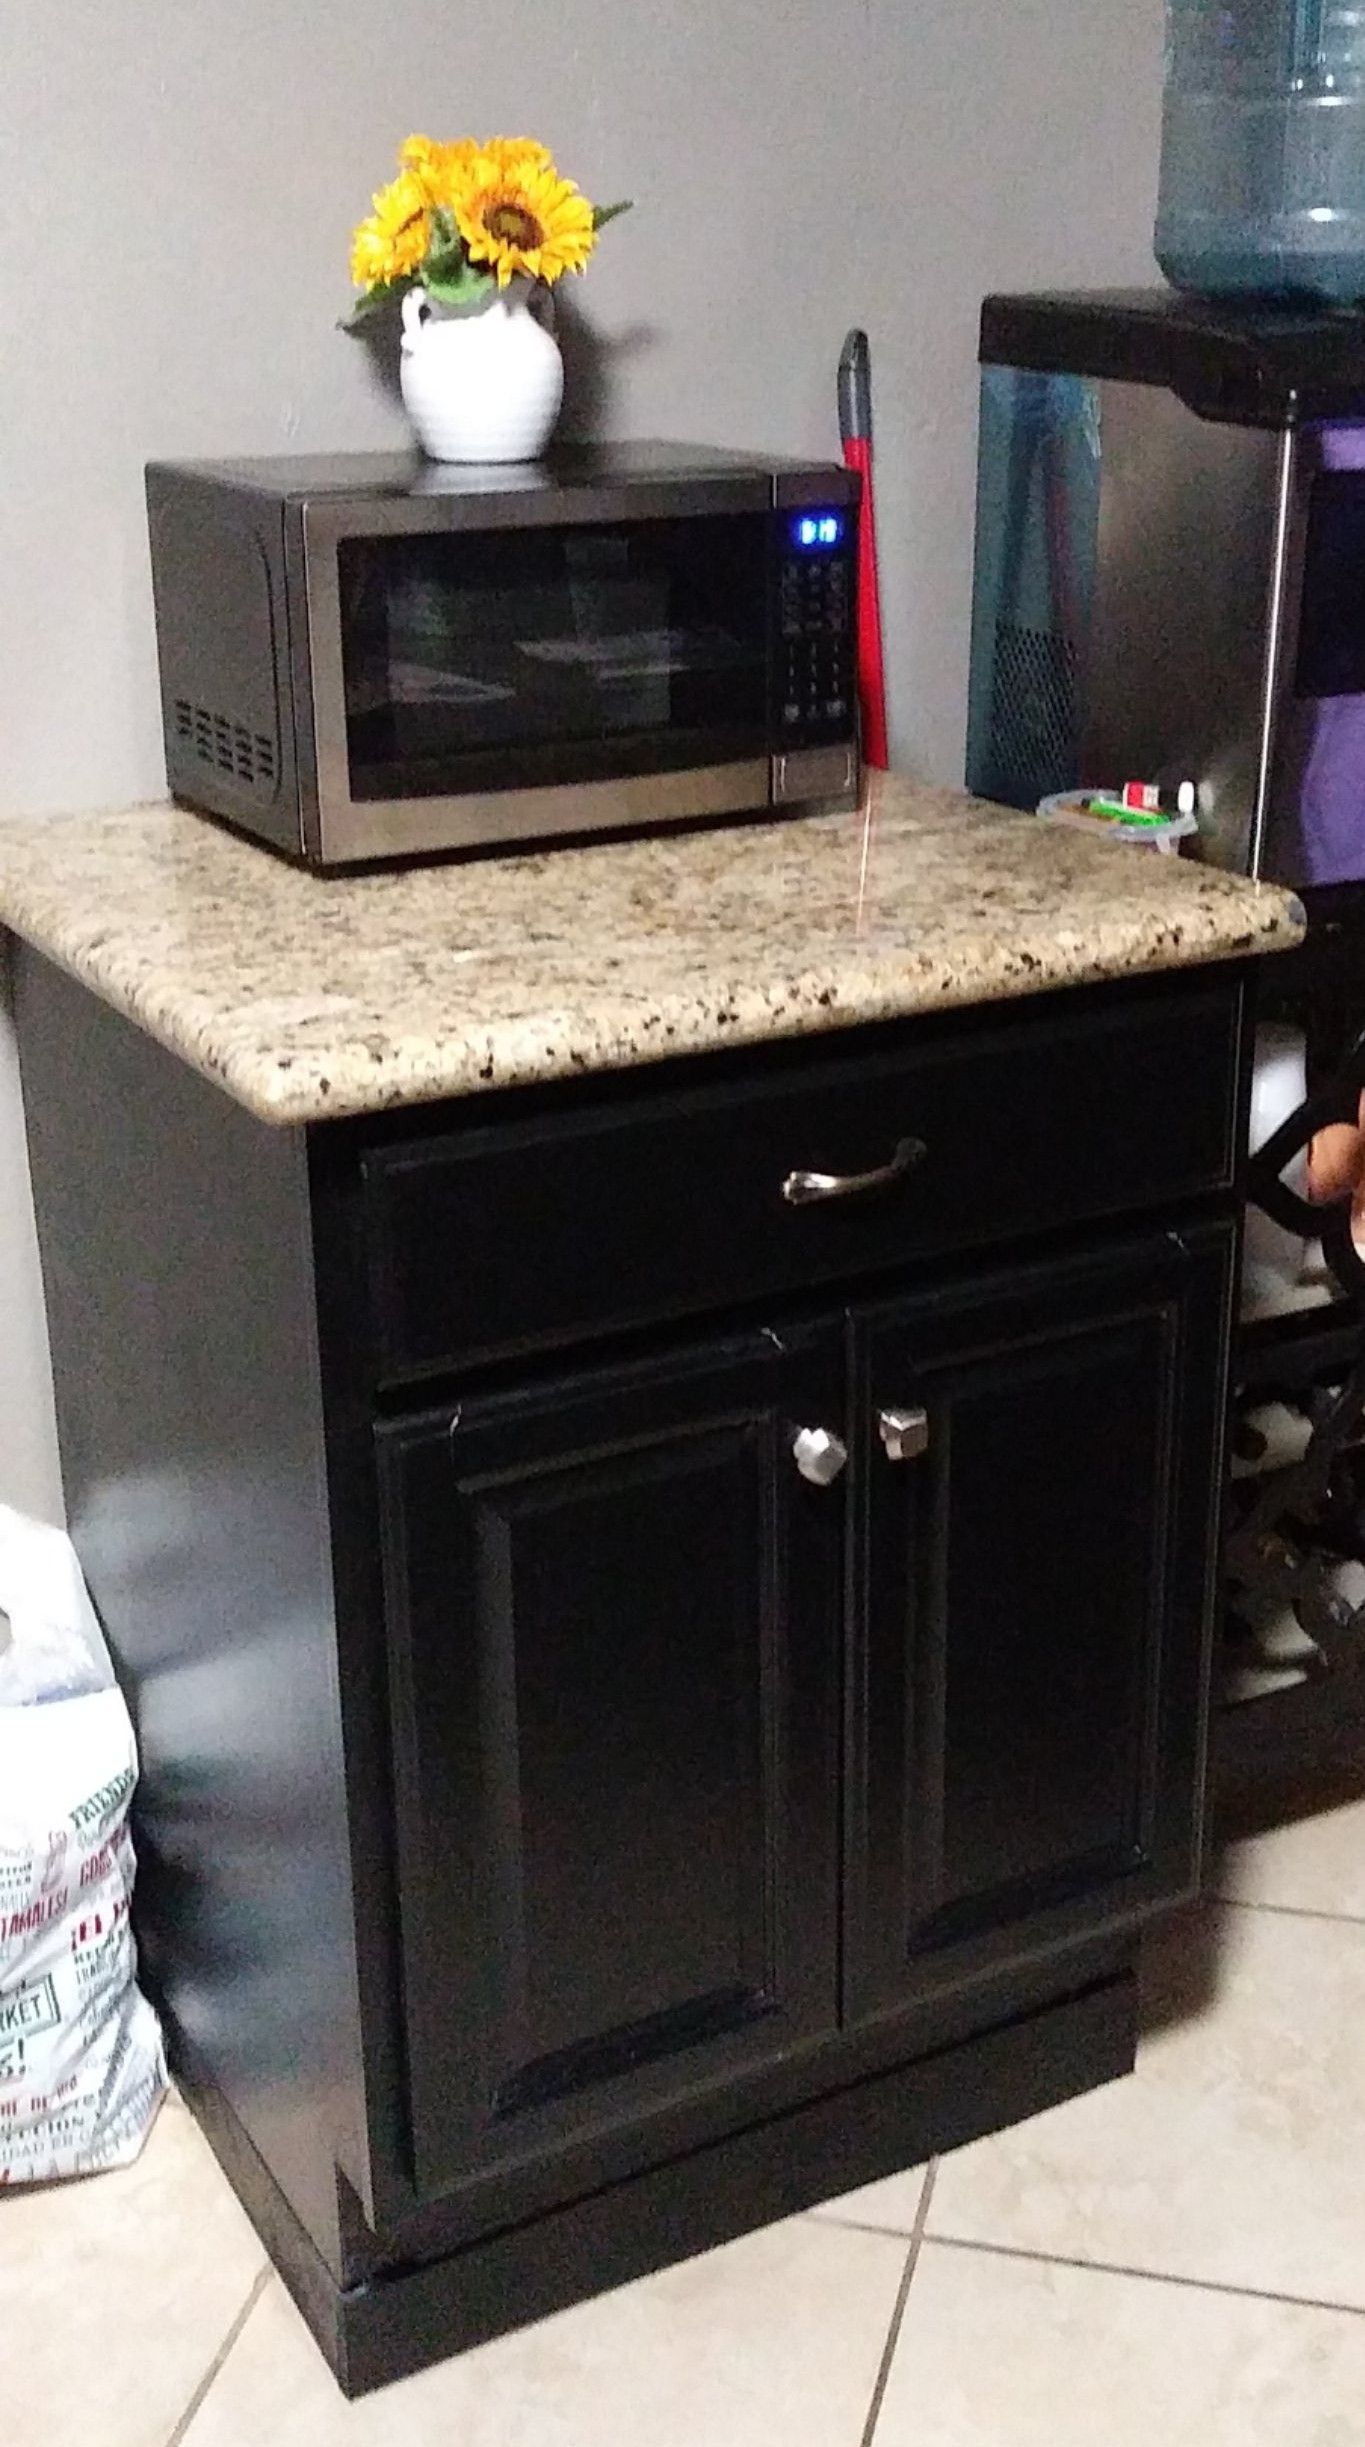 Granite kitchen cabinet H 29" W 27"